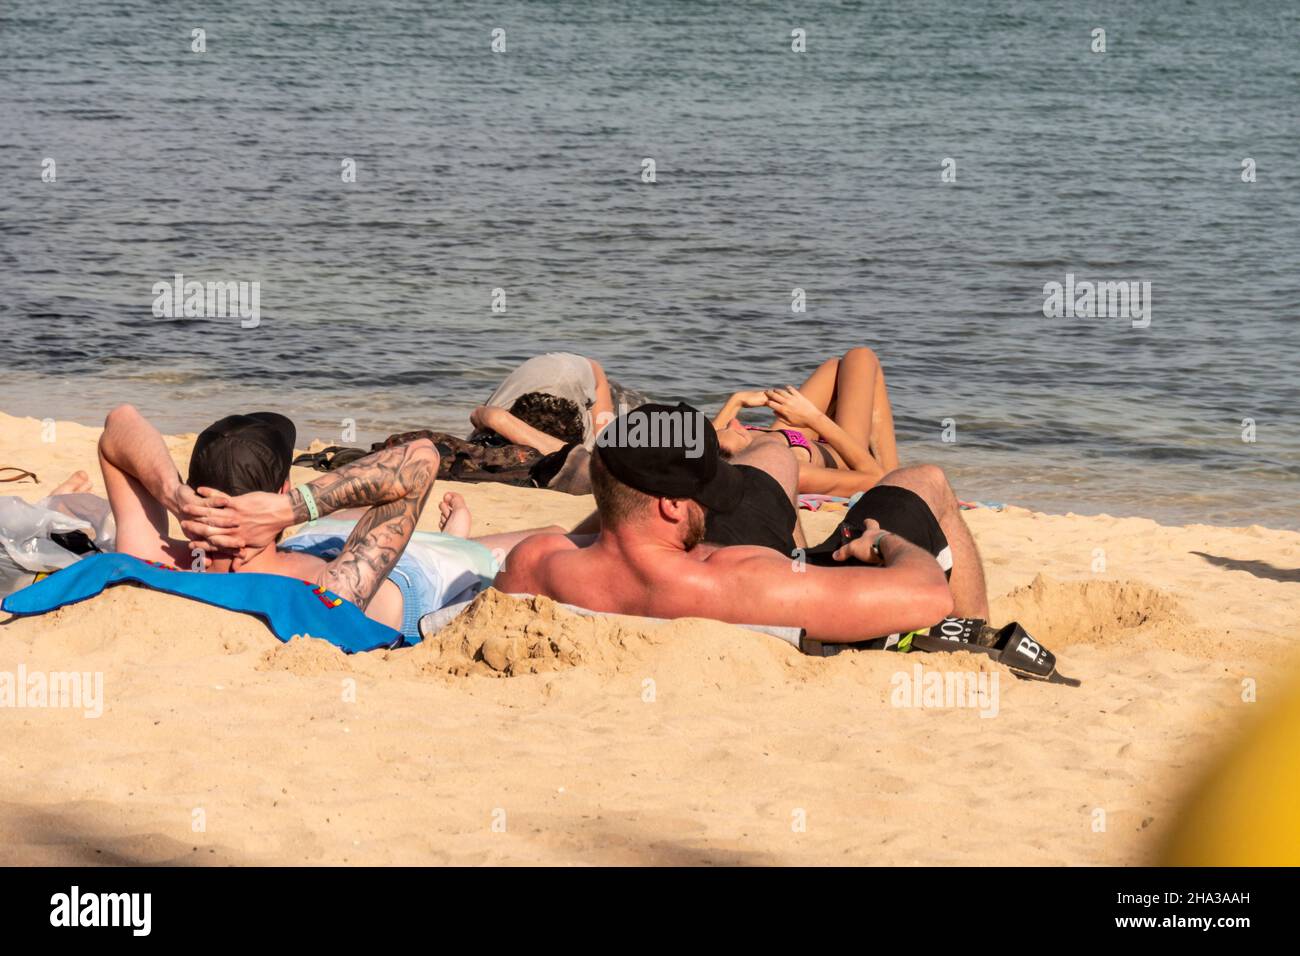 Britische Touristen am Strand von Corralejo, Fuerteventura, Kanarische Inseln, Spanien Foto Stock